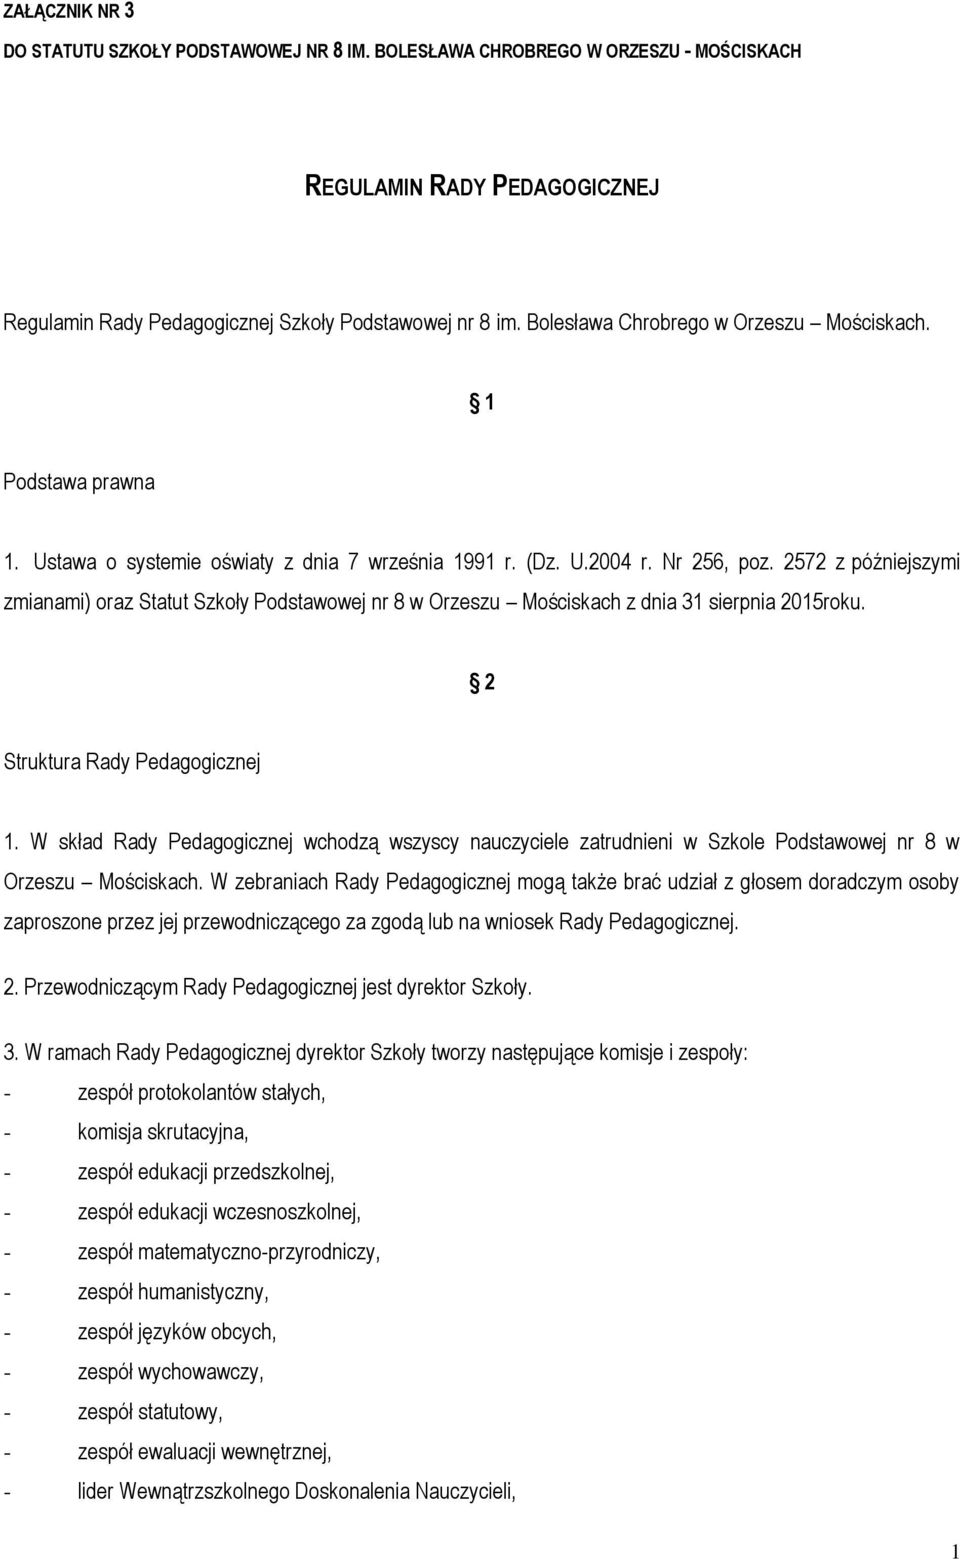 2572 z późniejszymi zmianami) oraz Statut Szkoły Podstawowej nr 8 w Orzeszu Mościskach z dnia 31 sierpnia 2015roku. 2 Struktura Rady Pedagogicznej 1.